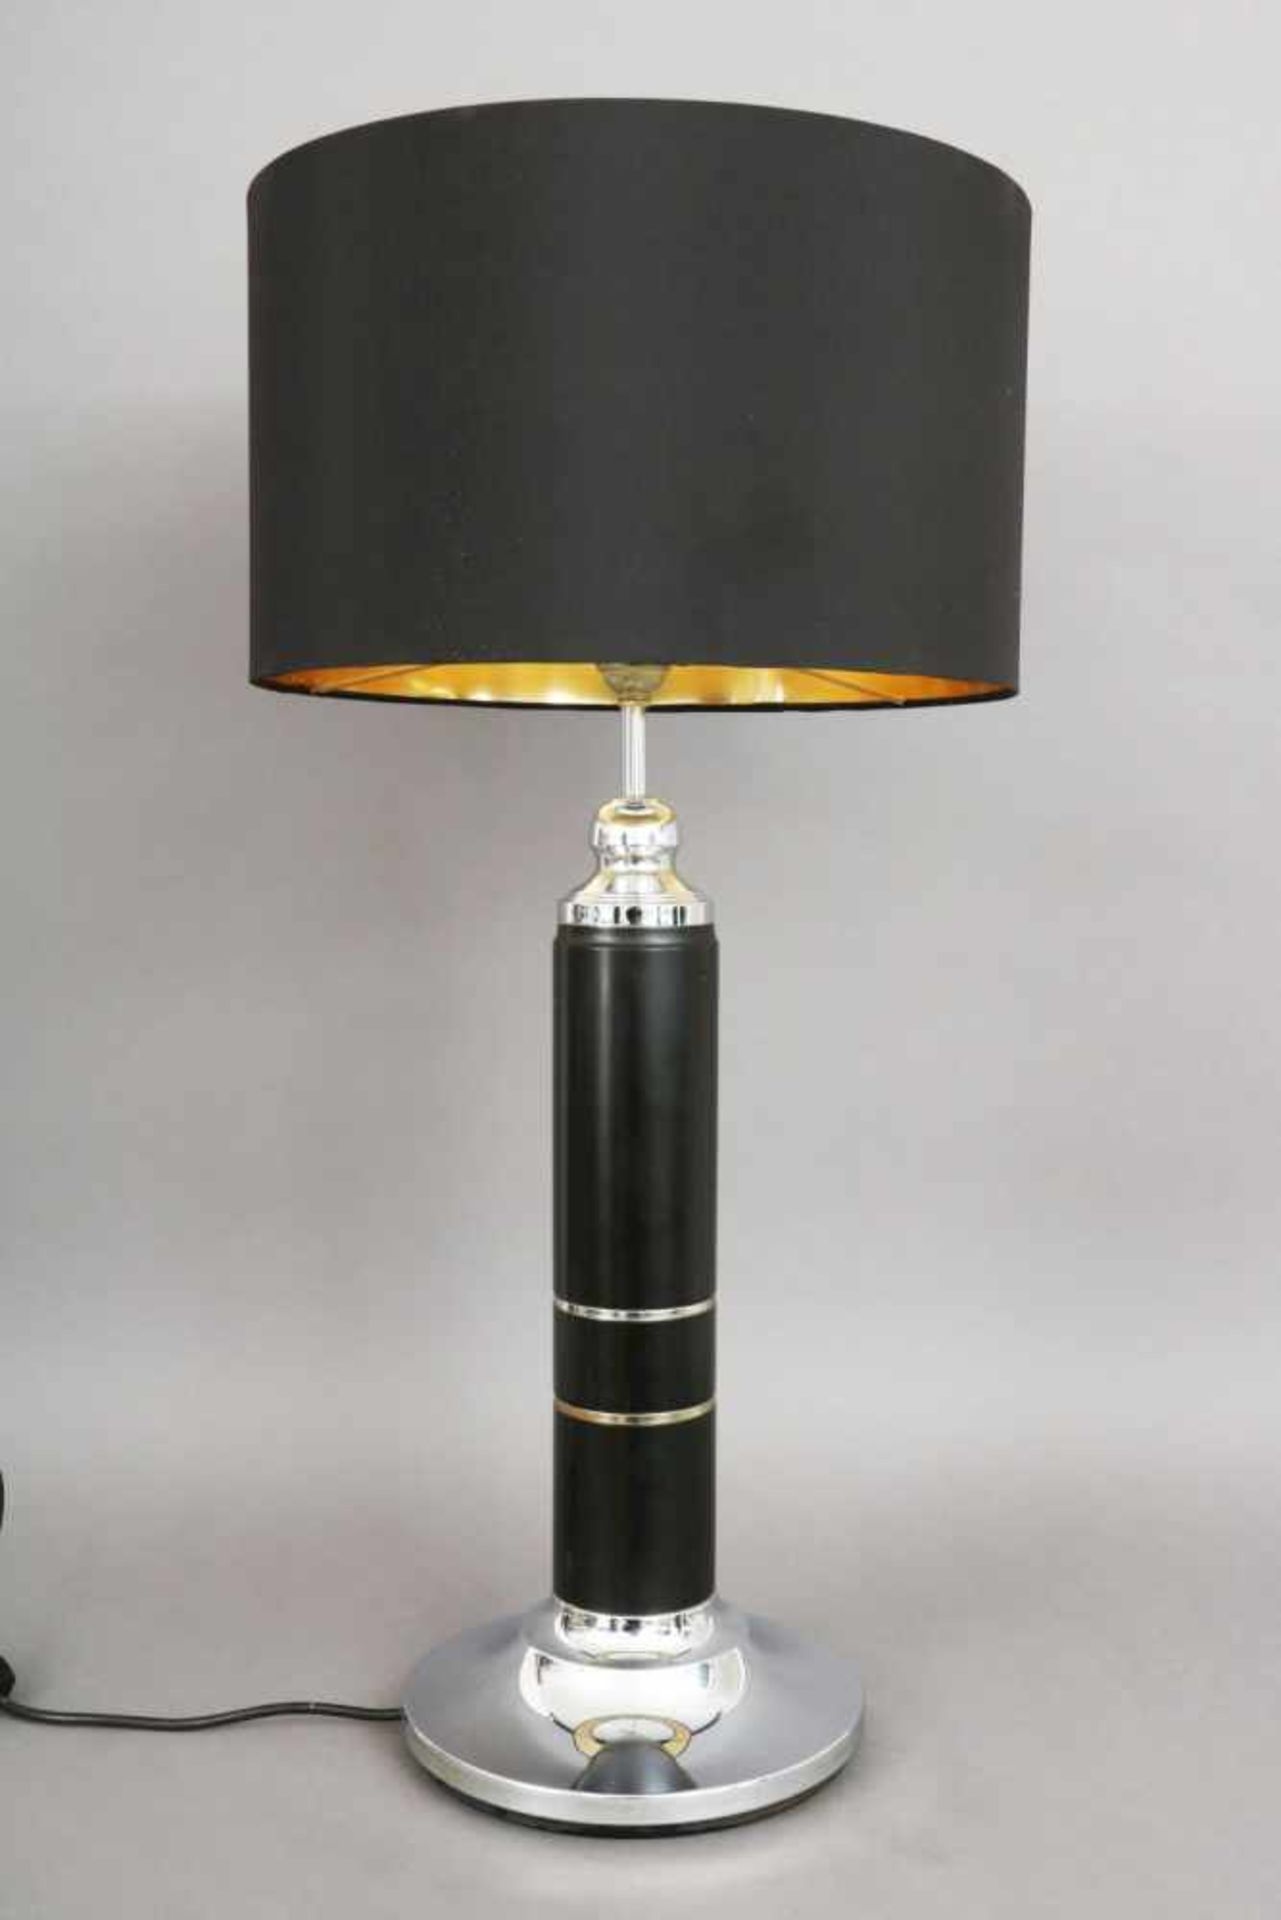 Tischlampe der 1980er Jahreverchromtes Metall und schwarzer Lederbeschlag, Säulenform, schwarzer